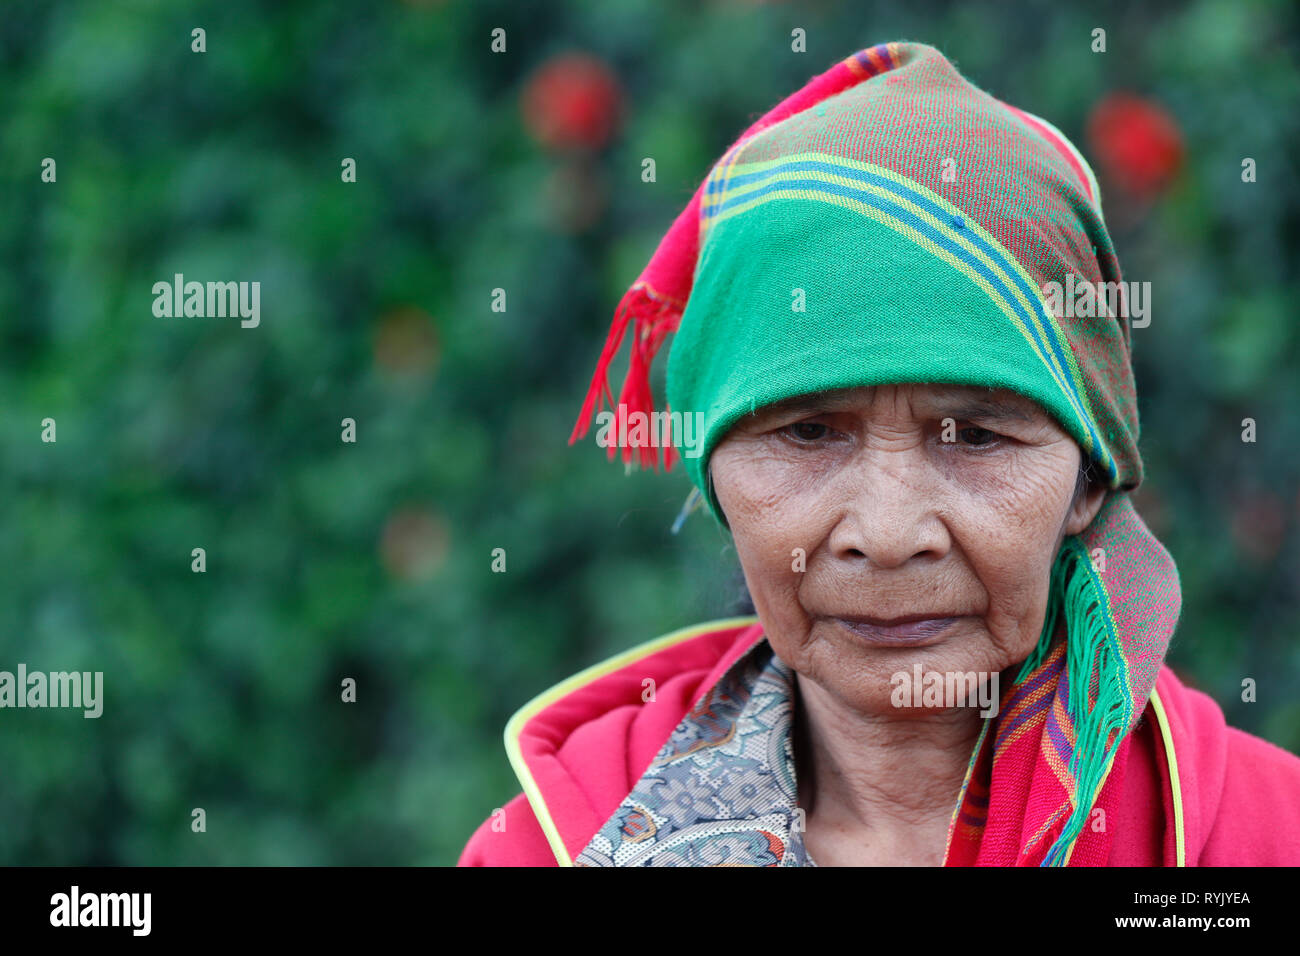 Hauts femme de minorités ethniques. Portrait. Dalat. Le Vietnam. Banque D'Images